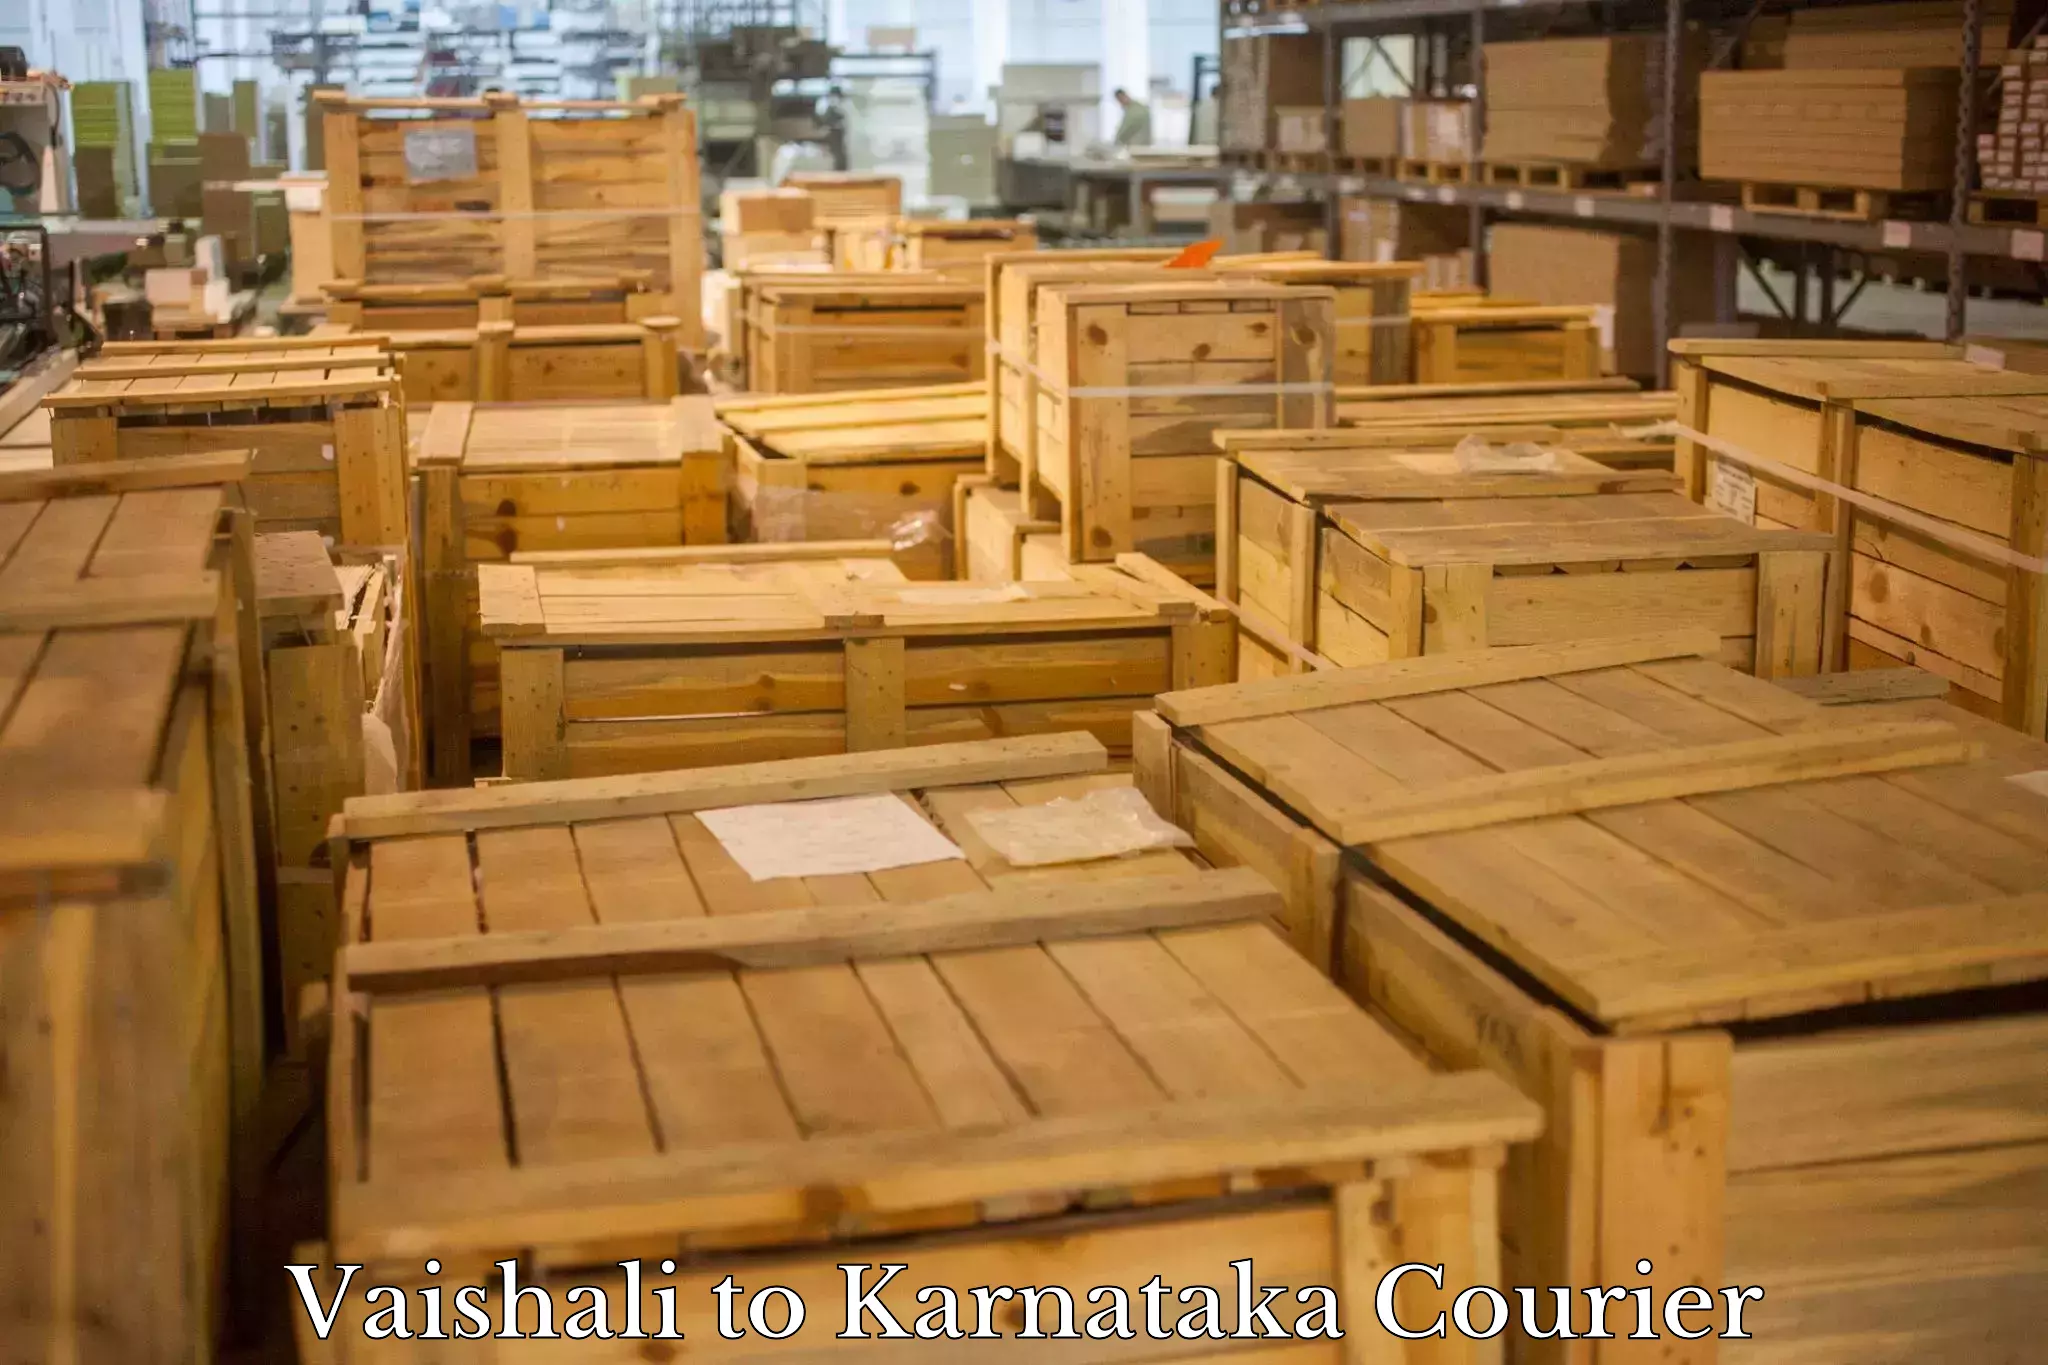 Premium courier solutions Vaishali to Basavana Bagewadi